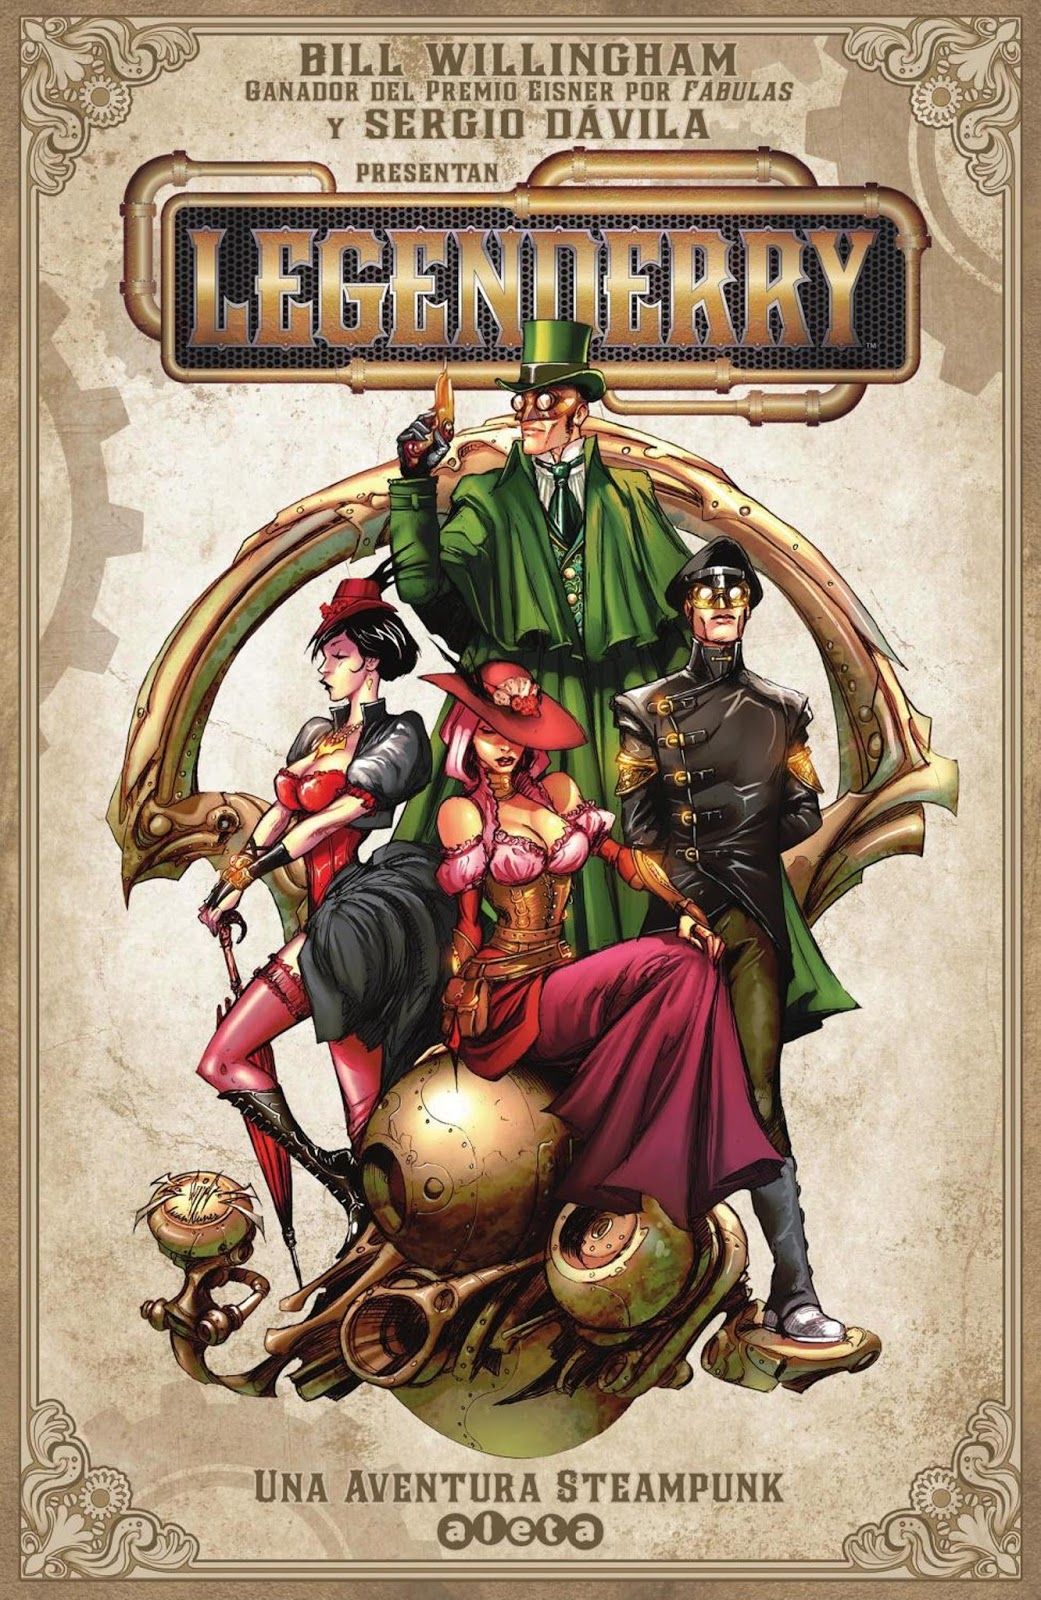 “Legenderry. Una aventura steampunk” (Bill Willingham y Sergio Dávila, Aleta Ediciones)